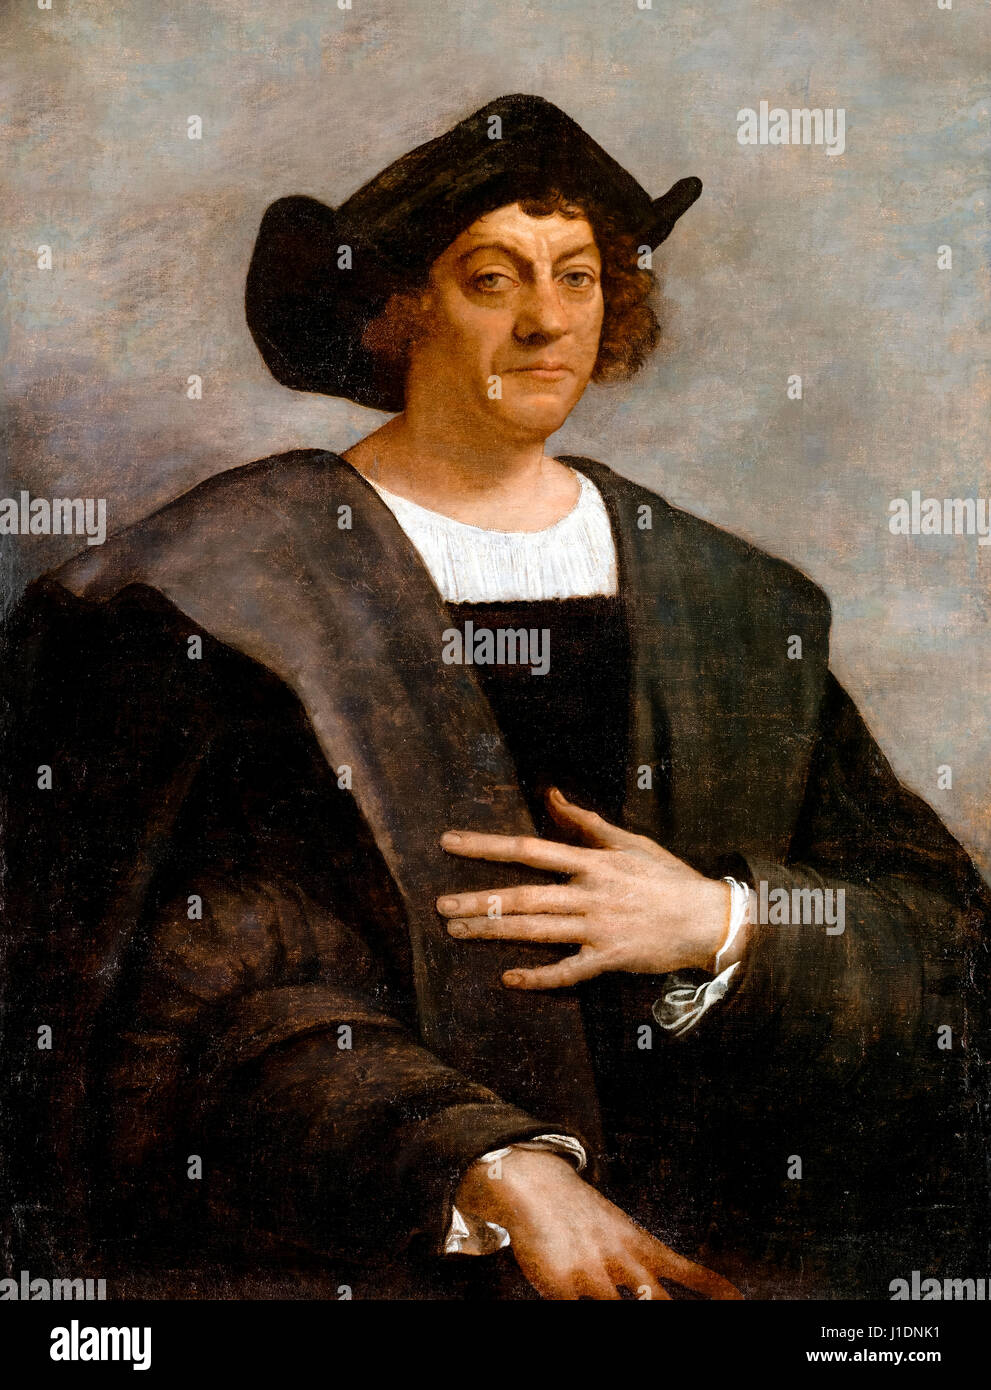 'Portrait d'un homme, dit-on, la peinture à l'huile de Christophe Colomb 1519 par Sebastiano del Piombo. Modifié numériquement (contexte étendu et le libellé a été retirée). Banque D'Images